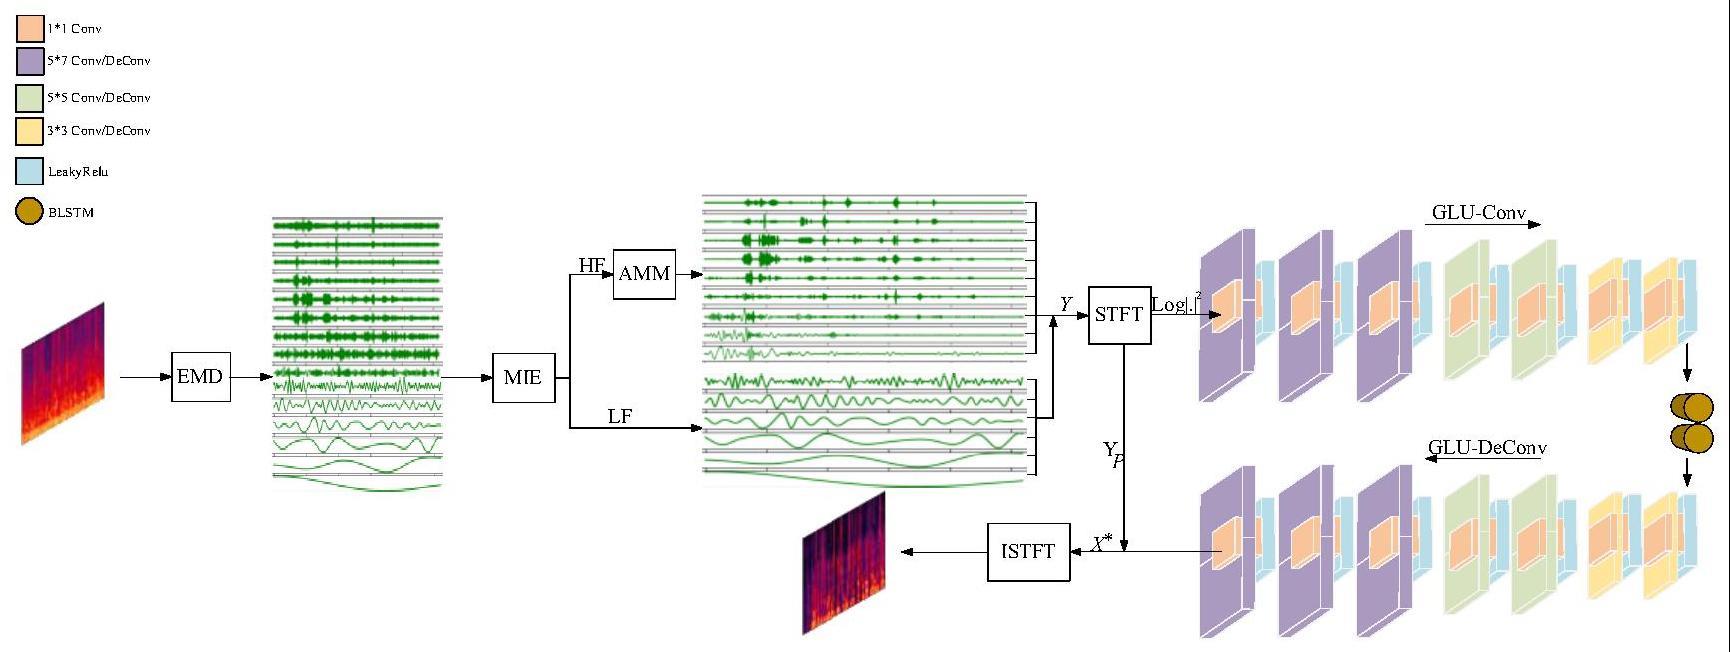 一种低信噪比场景下的ME-MGCRN单通道语音增强算法